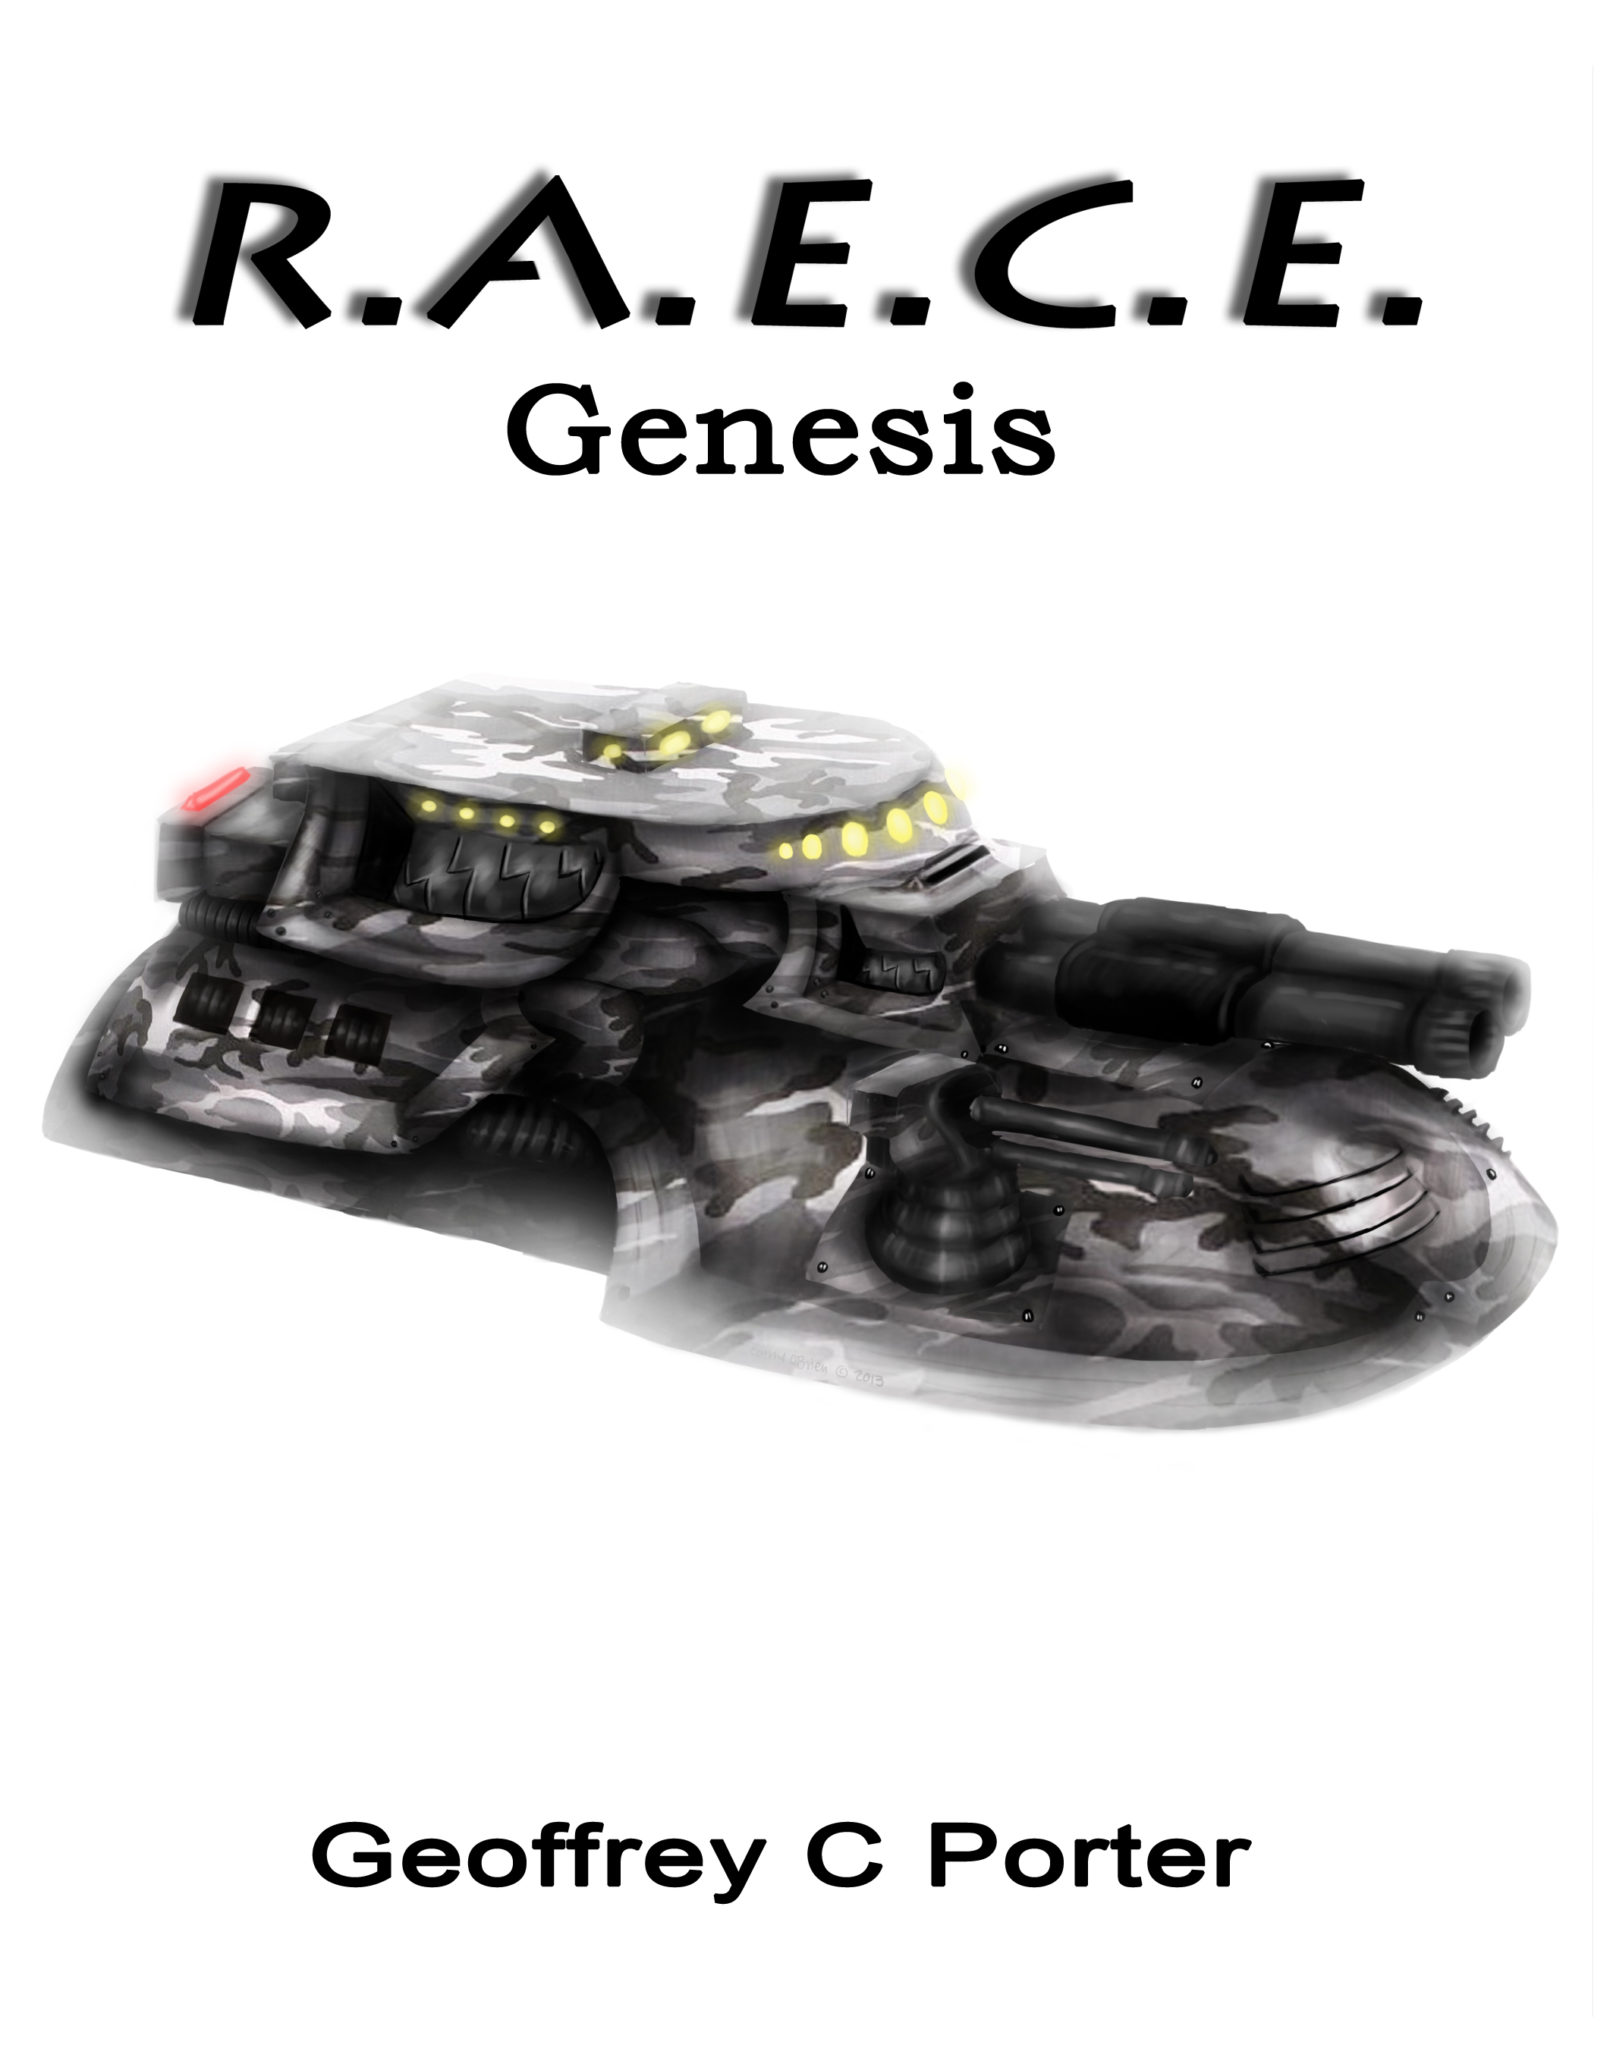 R.A.E.C.E. Genesis by Geoffrey C Porter